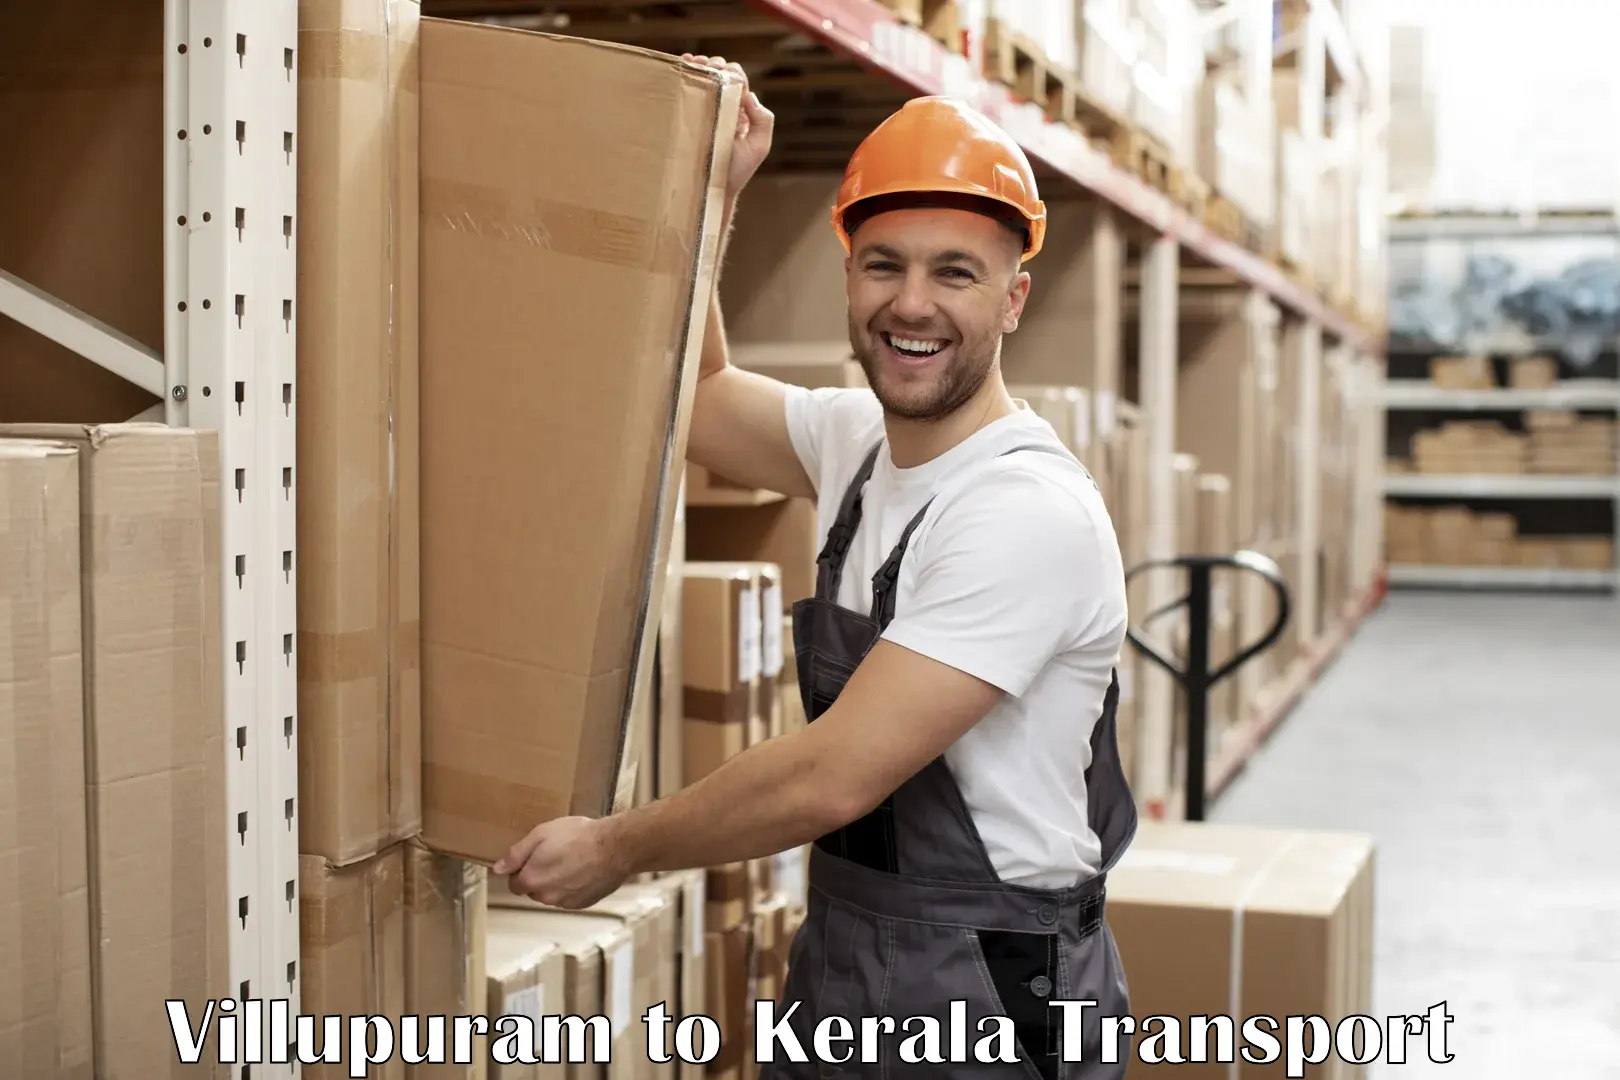 Road transport online services Villupuram to Parippally